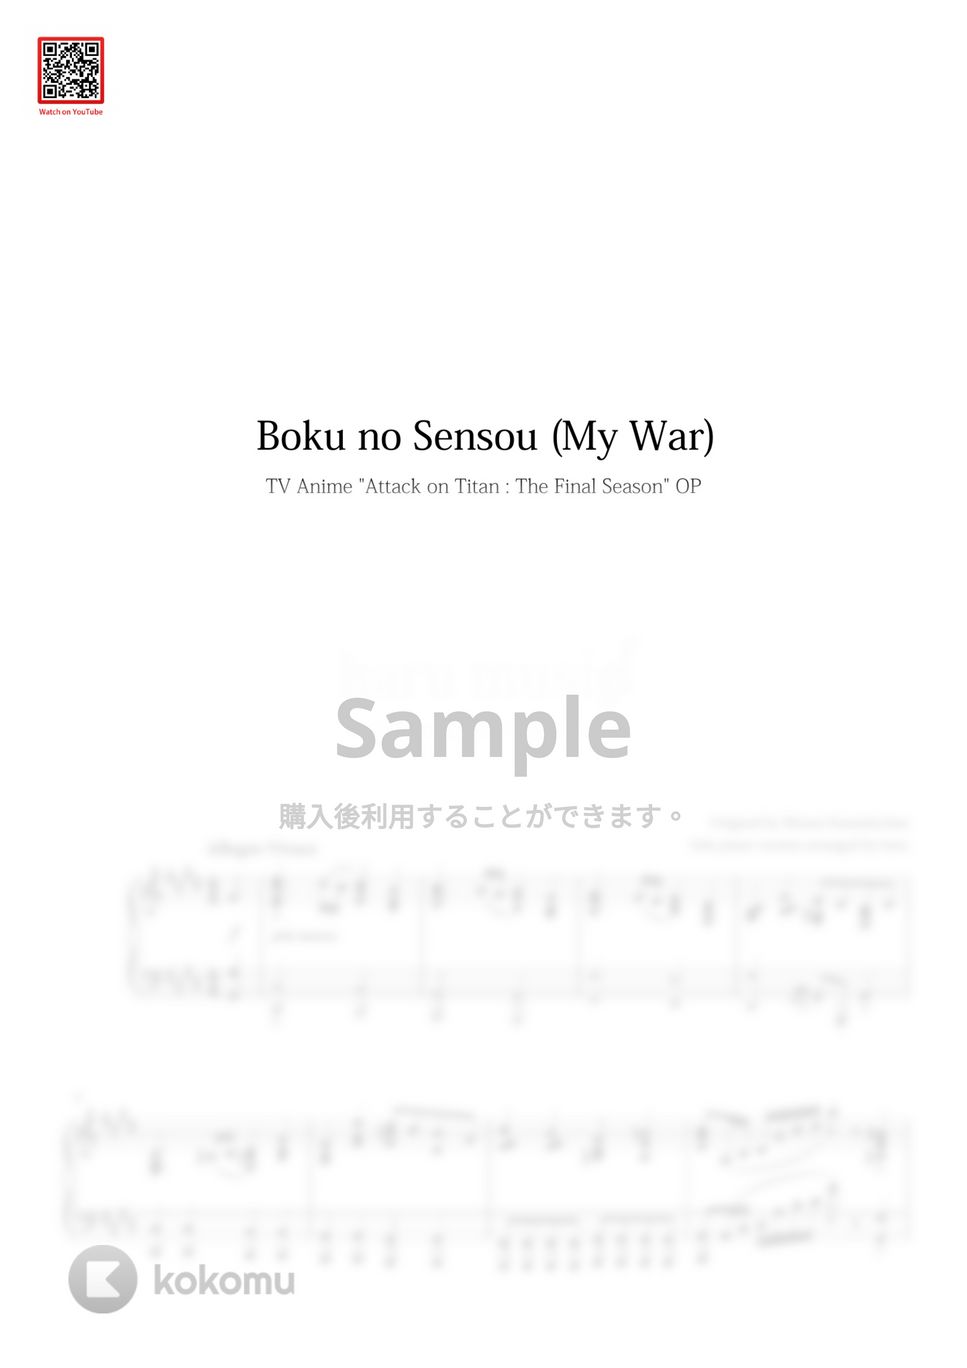 進撃の巨人4 Final Season - 僕の戦争 (My War) by haru